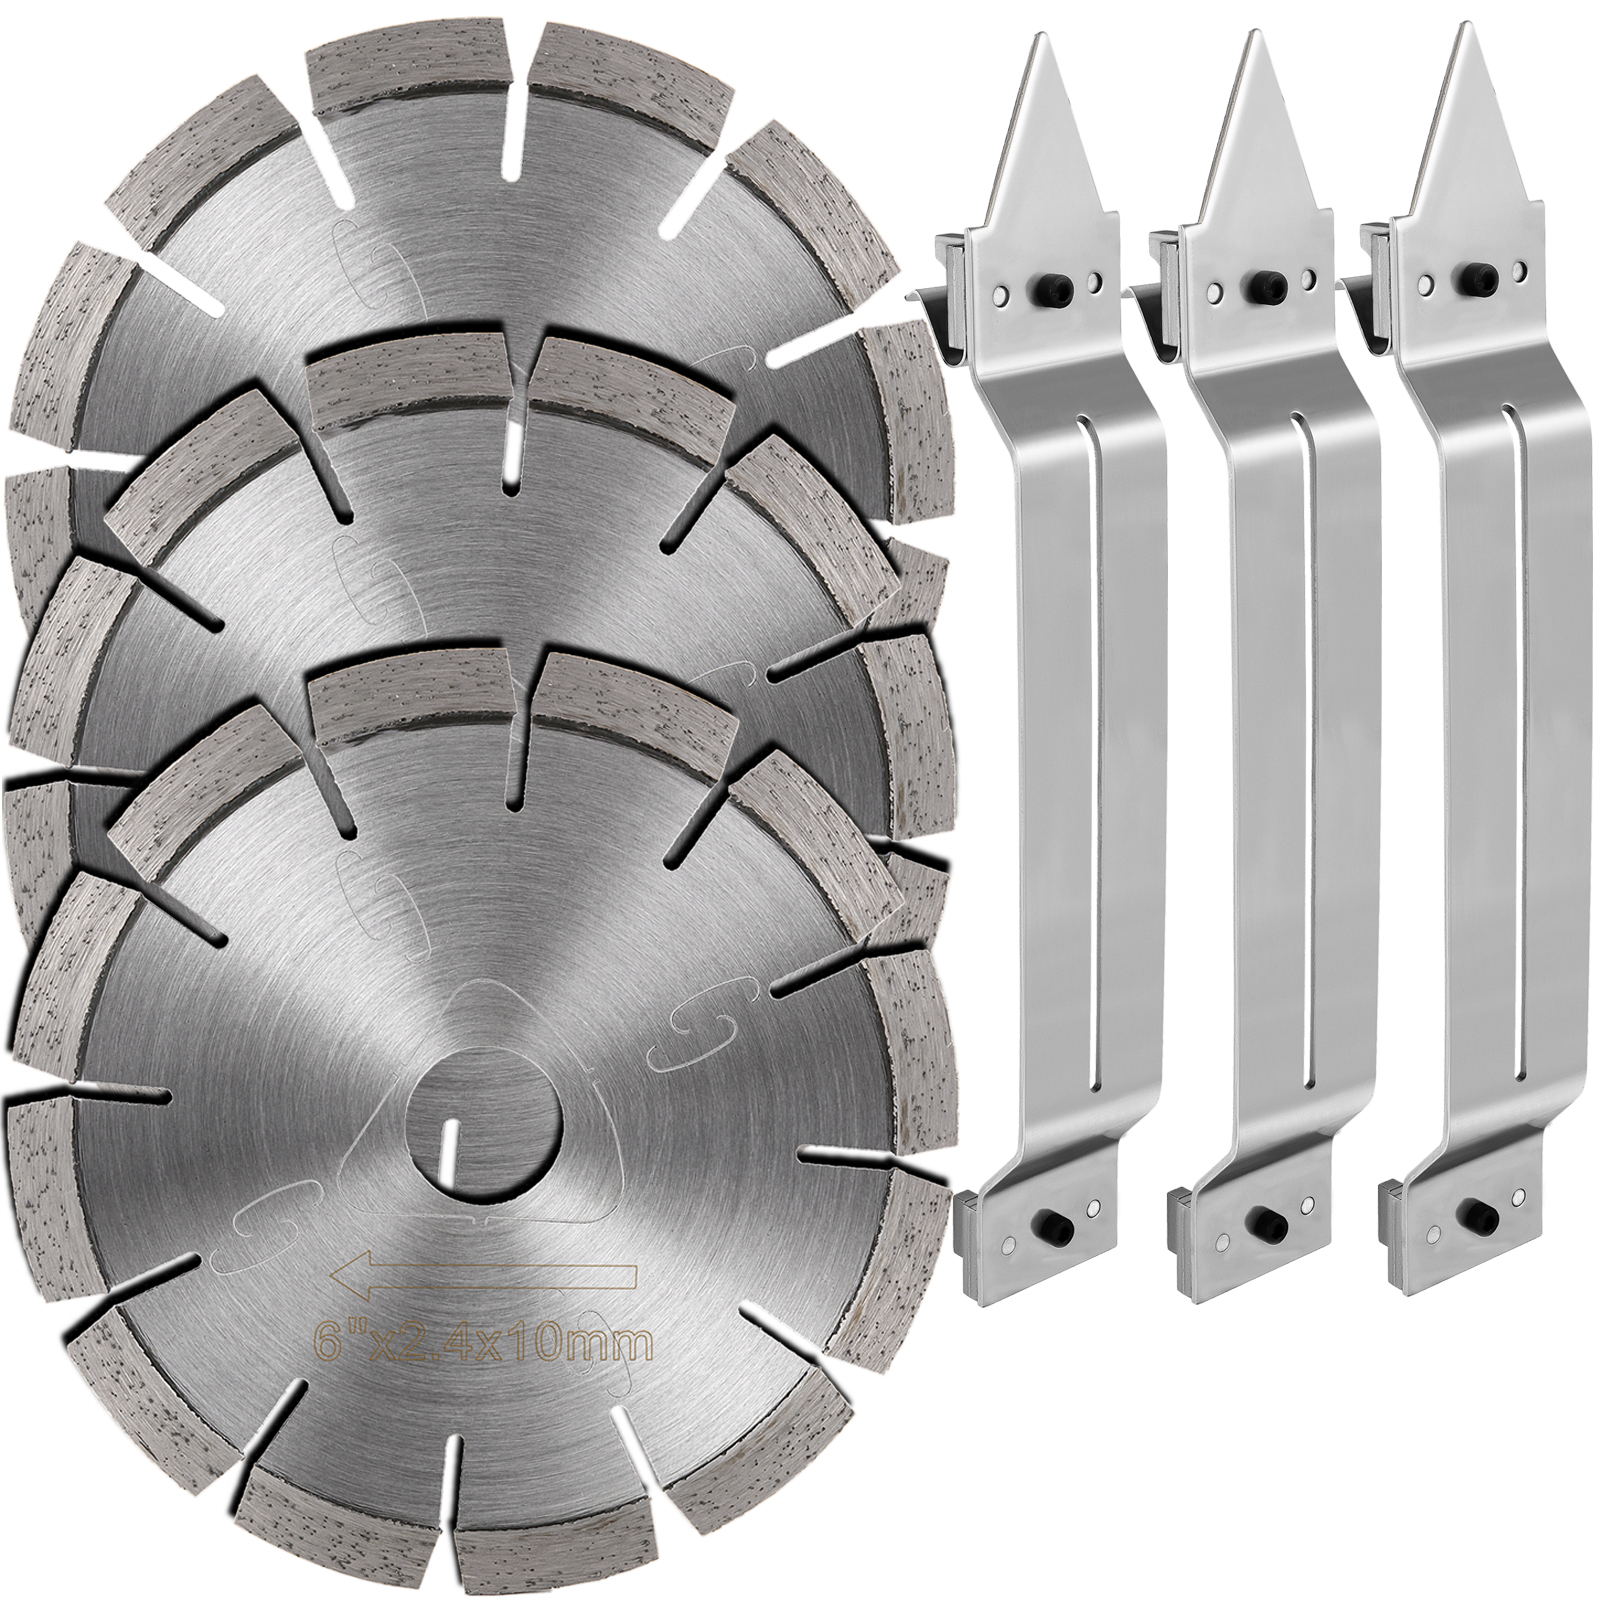 Vevor 6" Soff-cut Diamond Blade Concrete Saw Blade 3-pack W/ Skid Plate Asphalt от Vevor Many GEOs